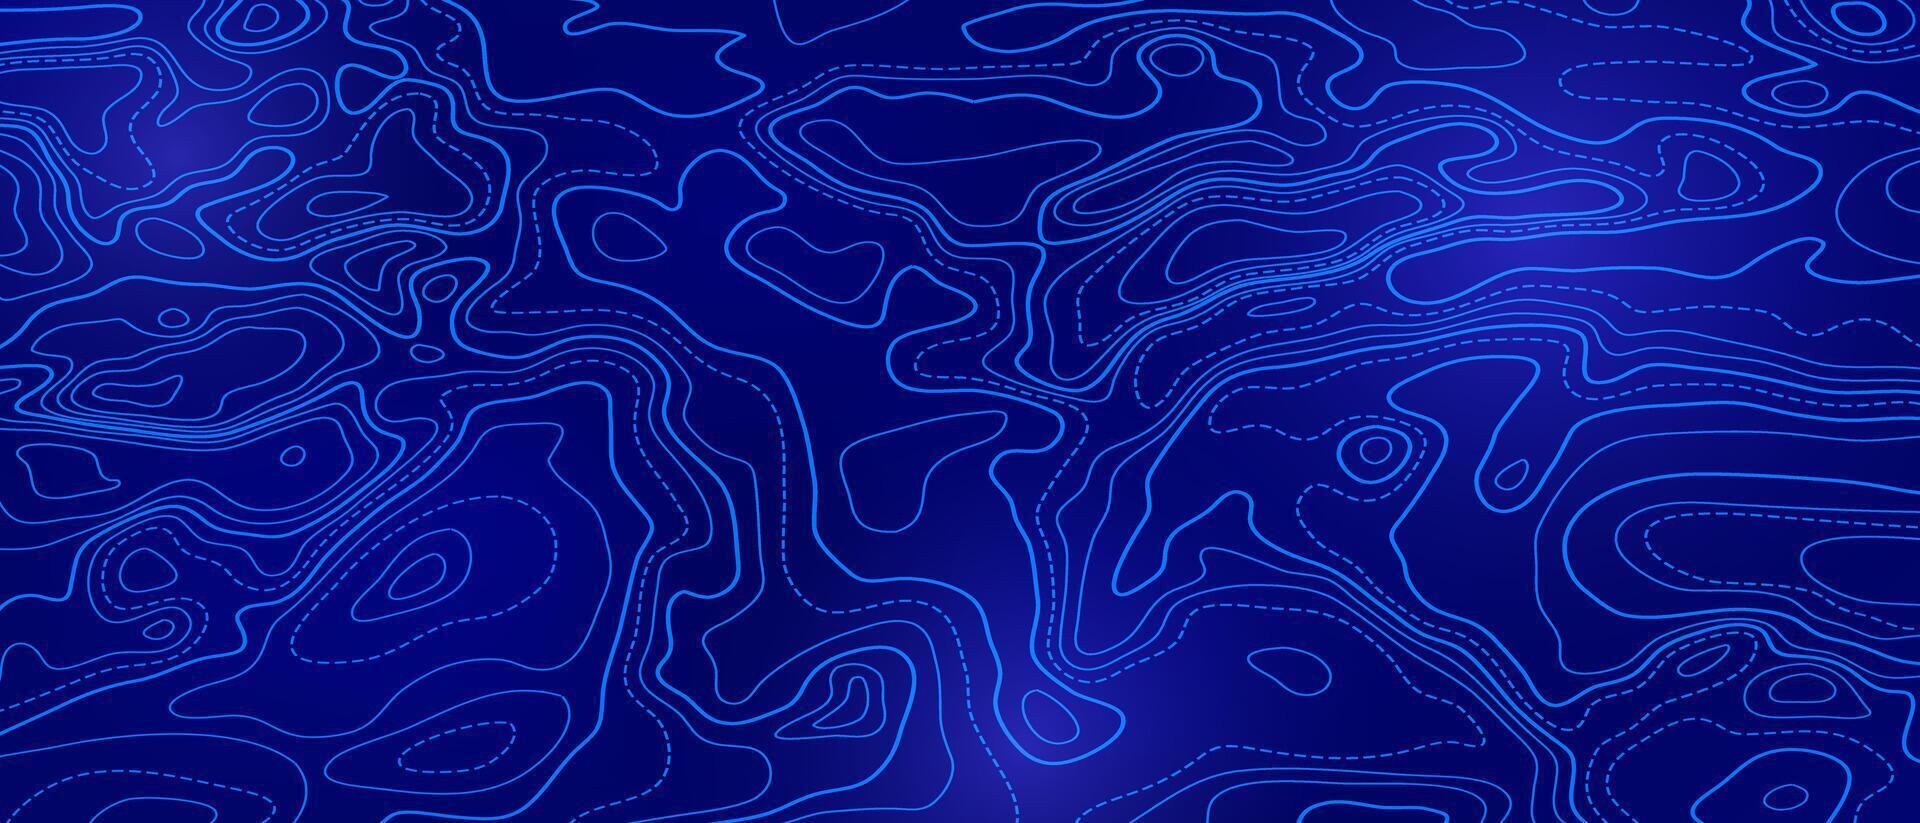 oceano topografica linea carta geografica con formosa onda isolines illustrazione. vettore